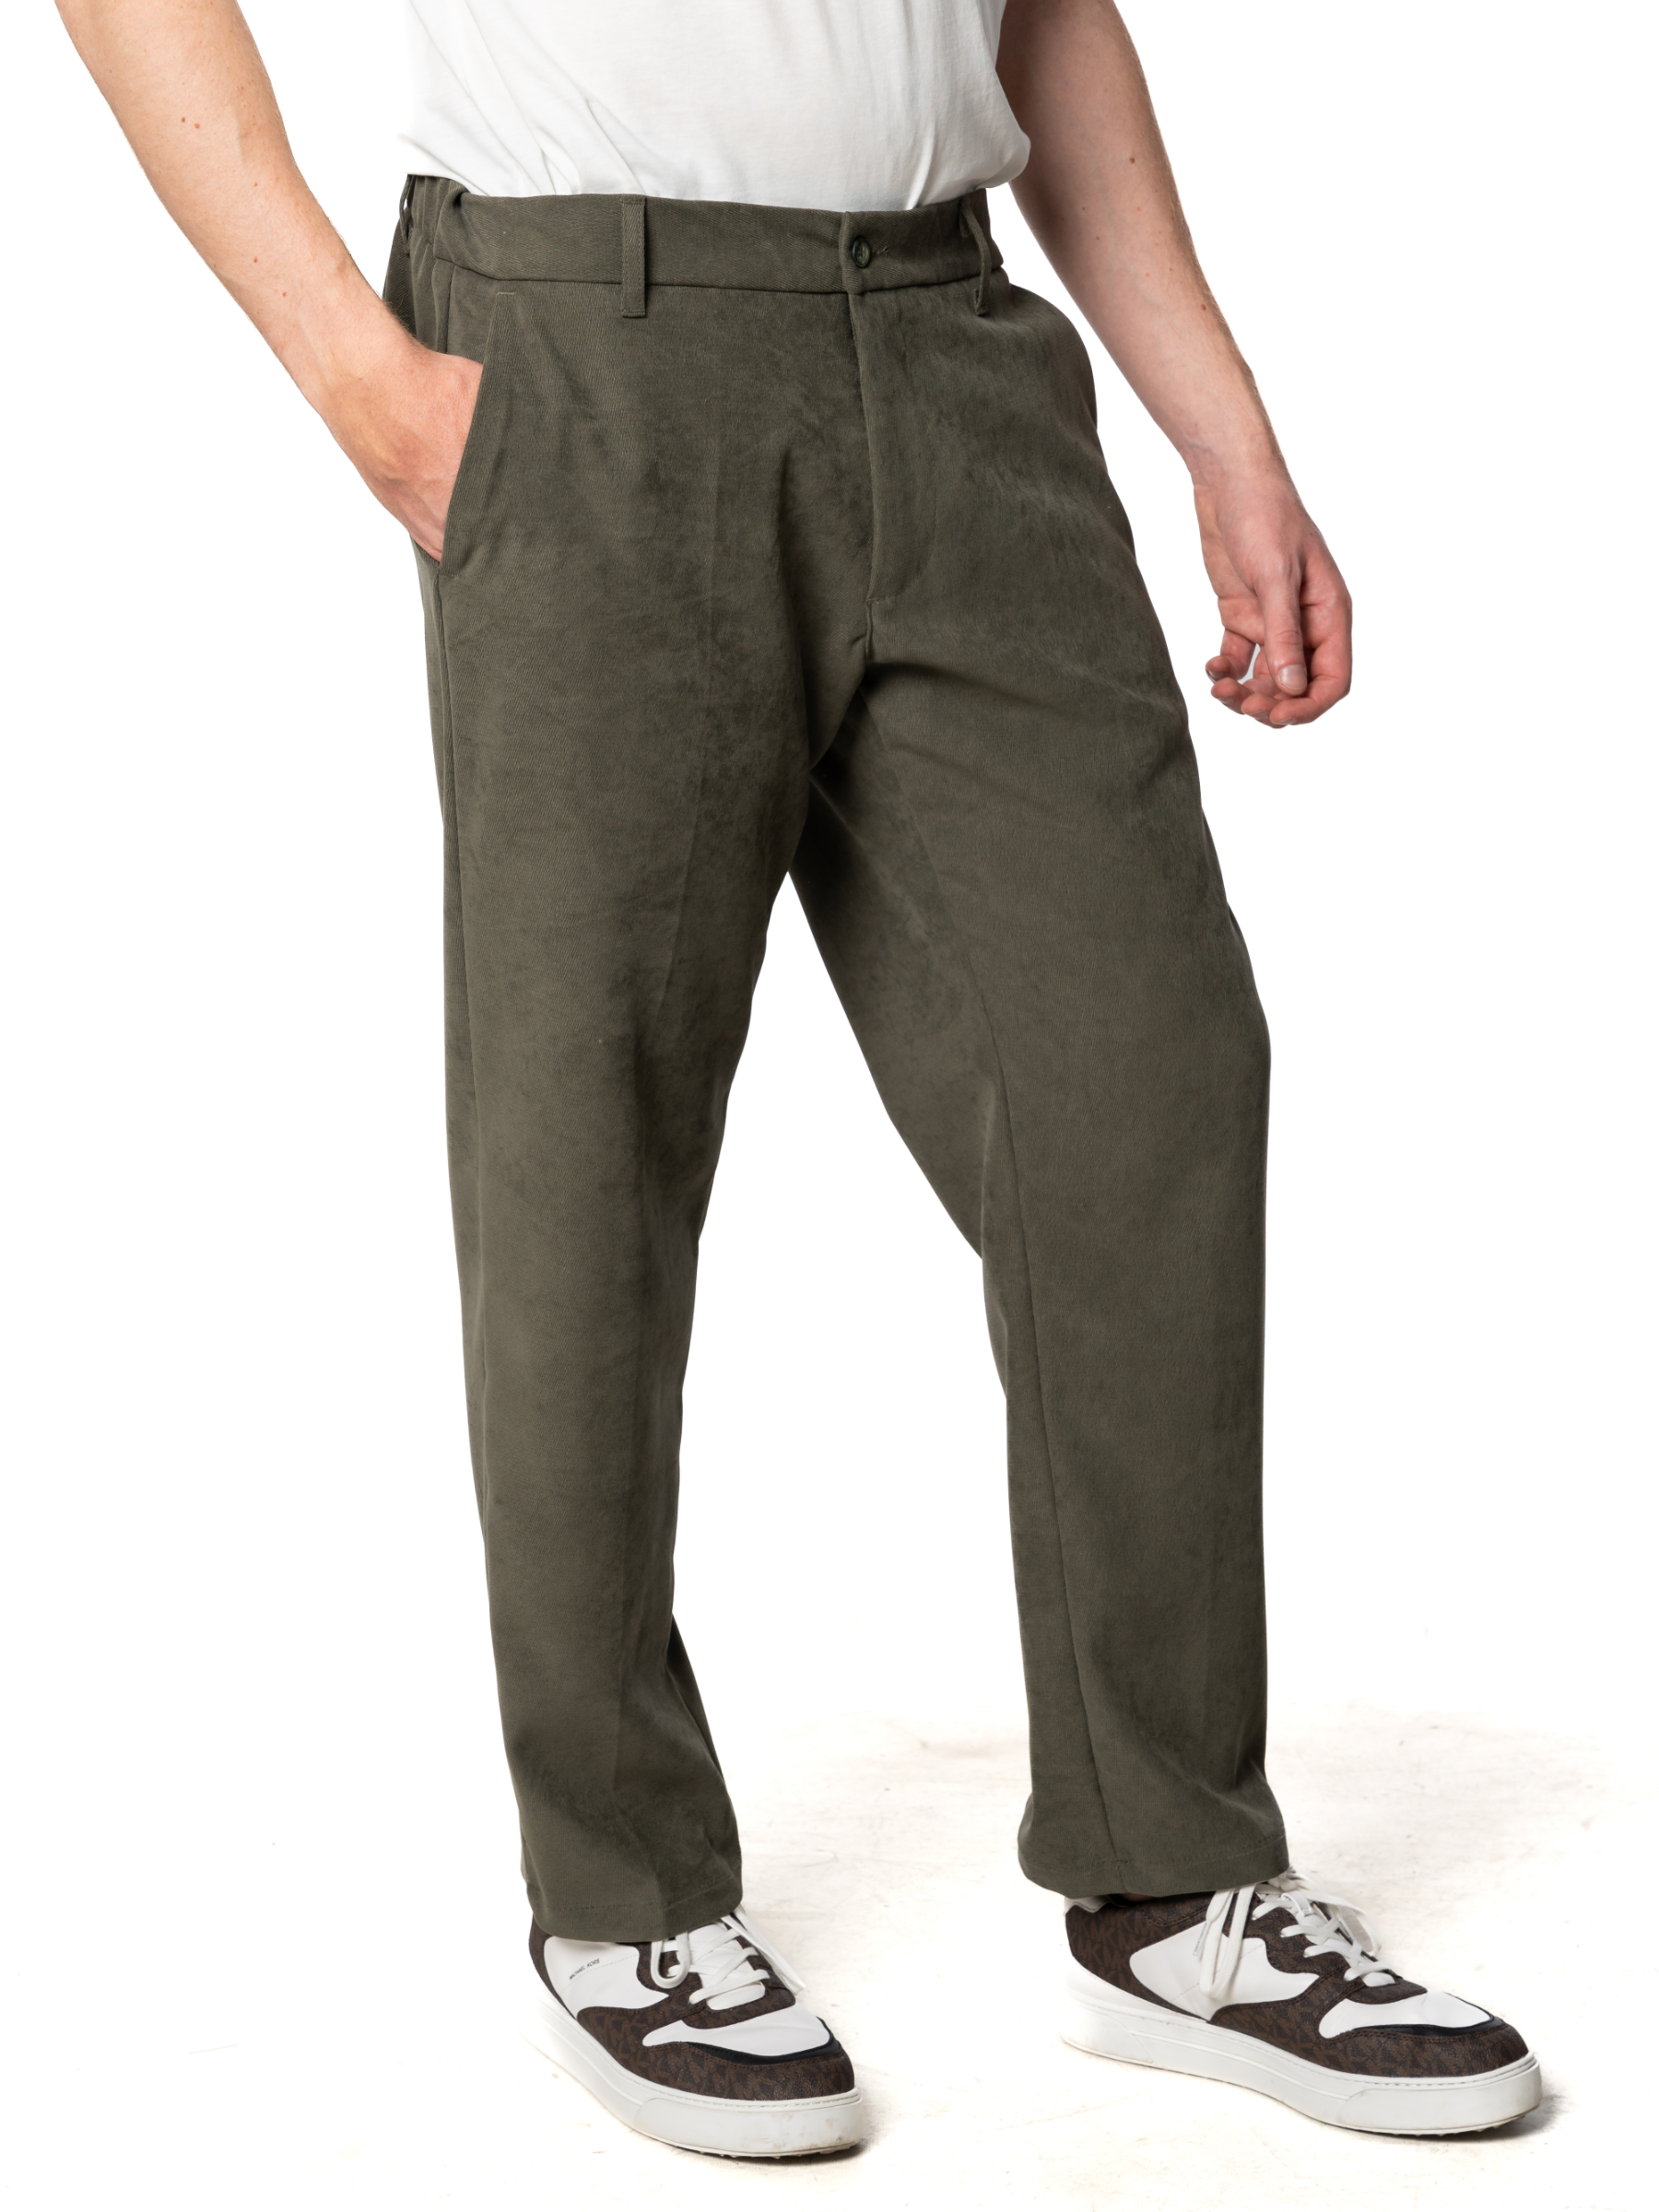 Pantalone Bonus verde